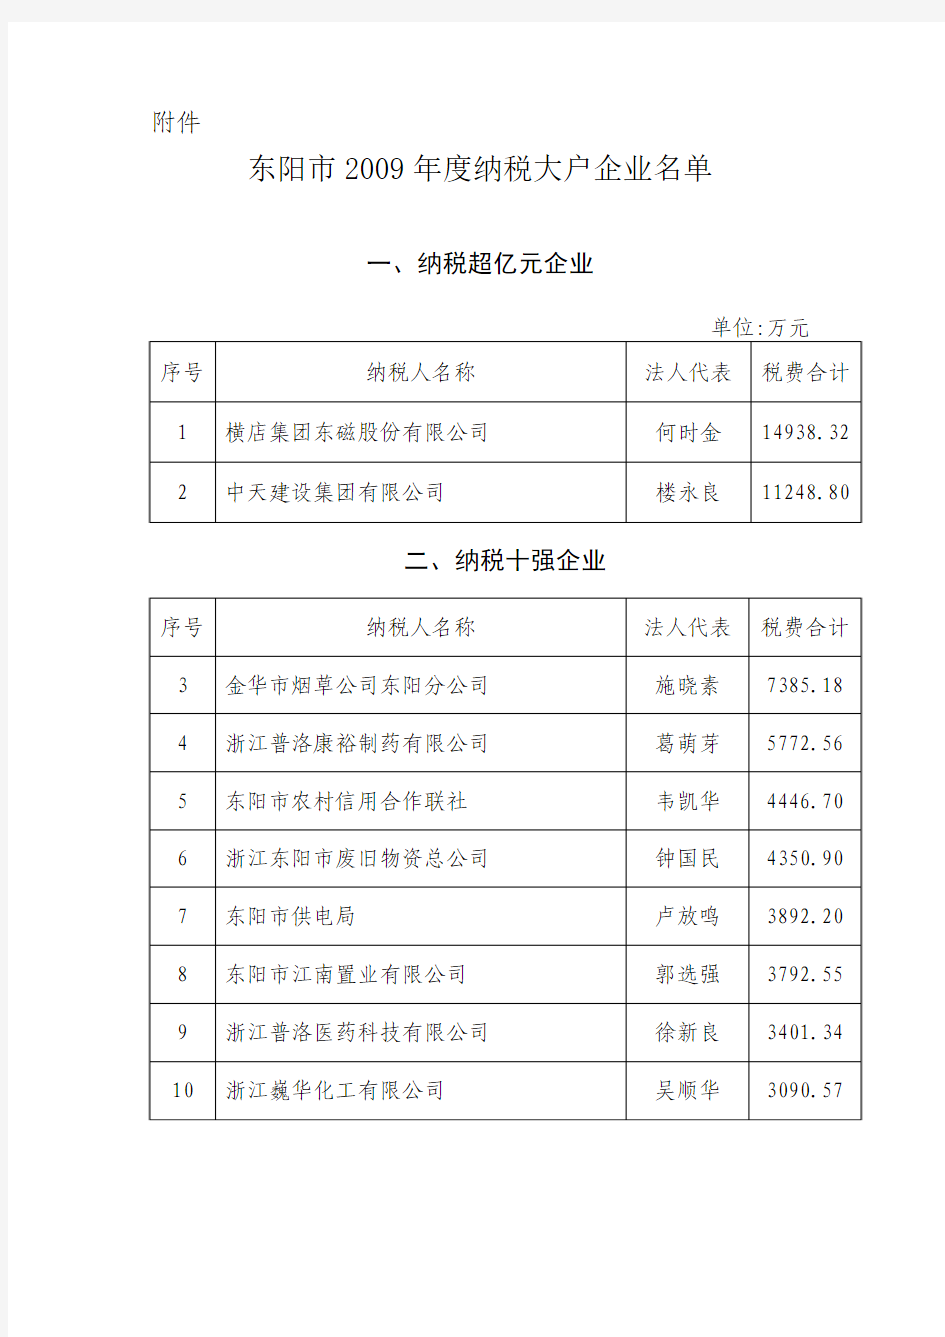 东阳市2009年度纳税大户企业名单